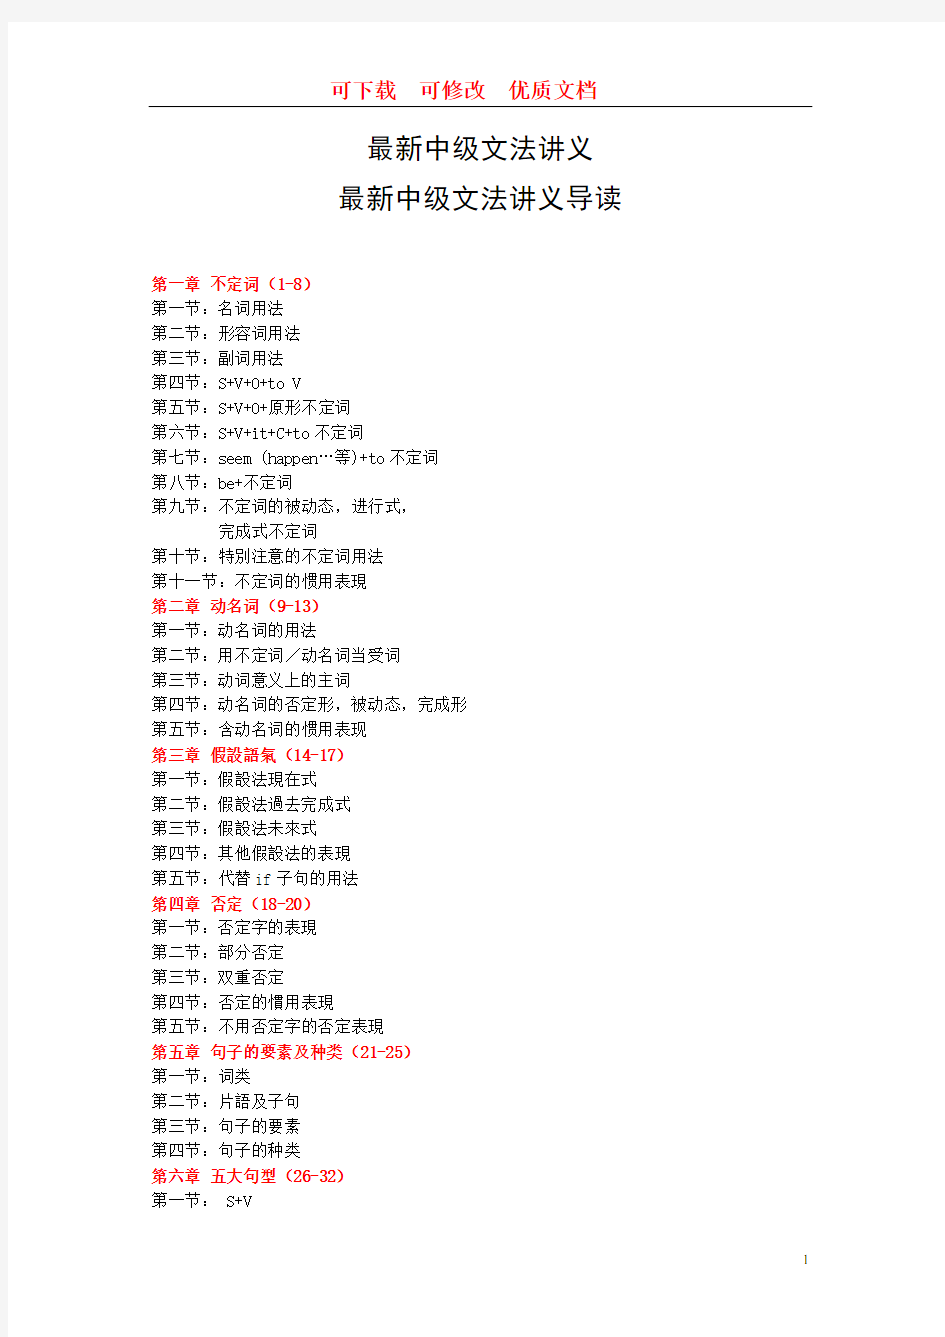 谢孟媛中级文法讲义最新整理版  可下载  可修改的参赛